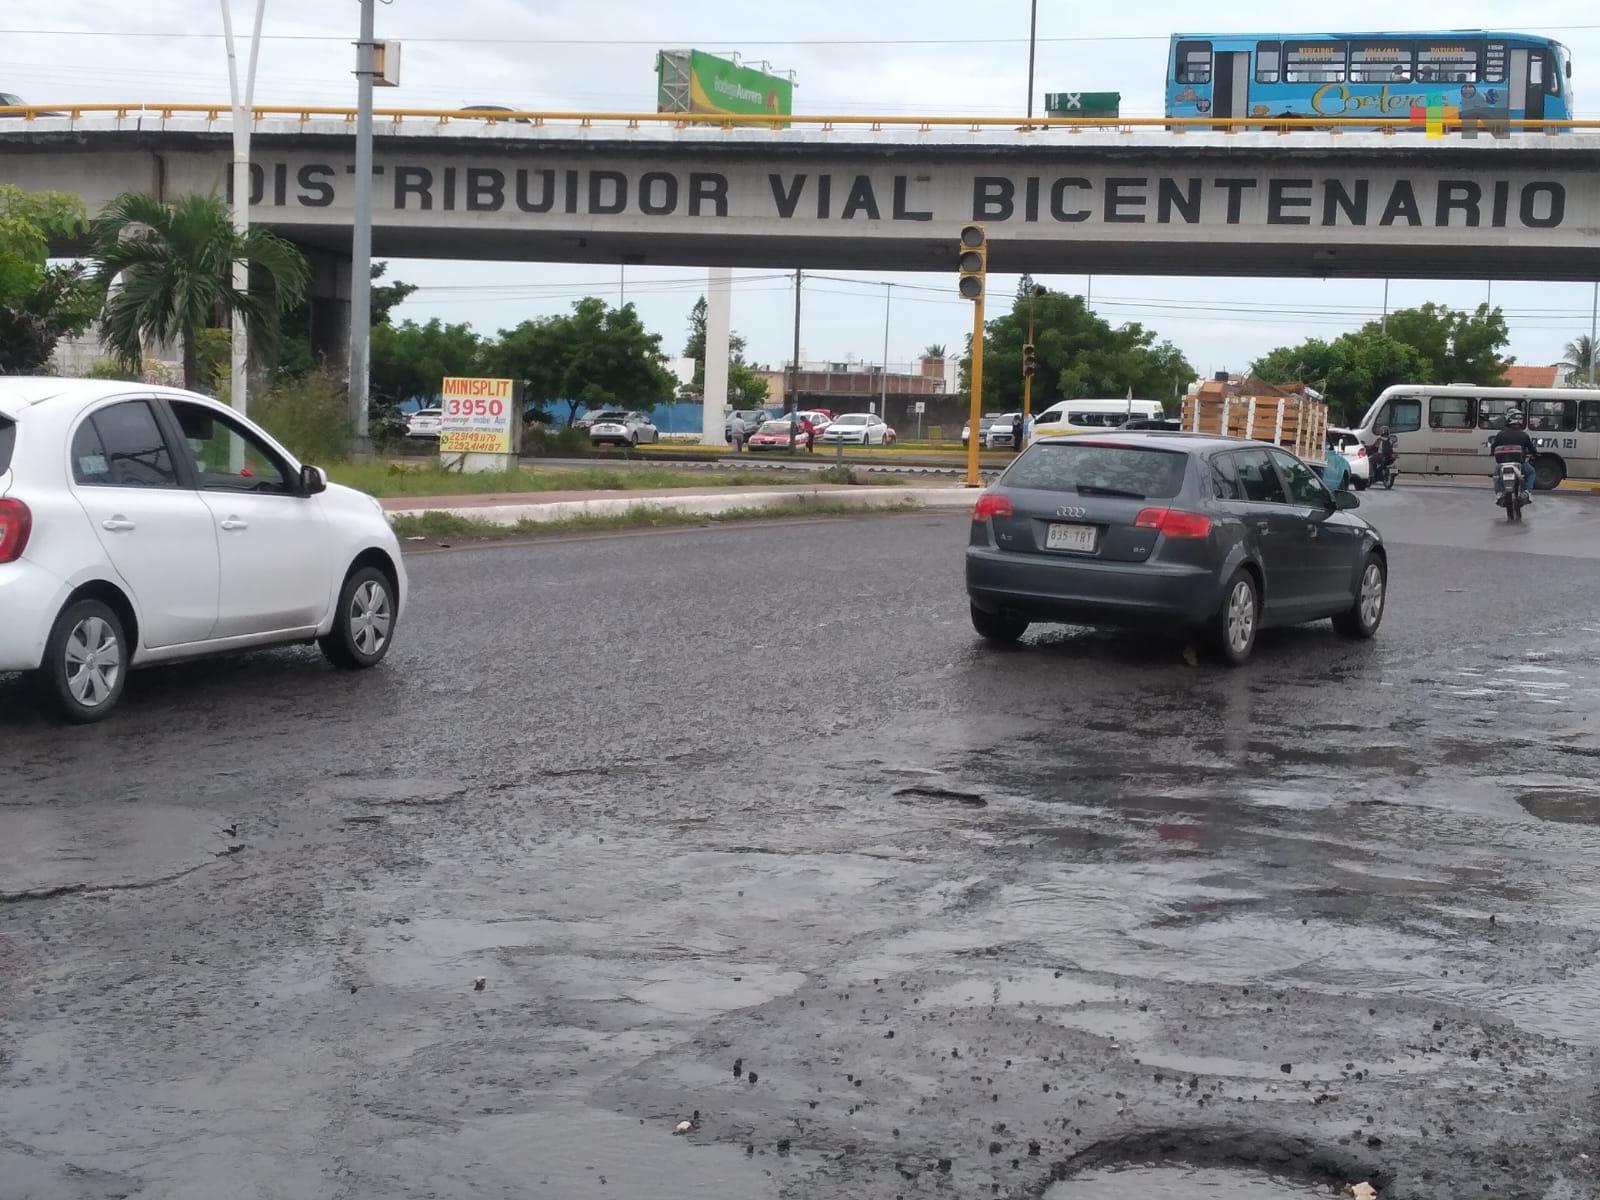 Desde hace una semana sin funcionar semáforos en cruce de avenida Ejército Mexicano y carretera Veracruz-Medellín